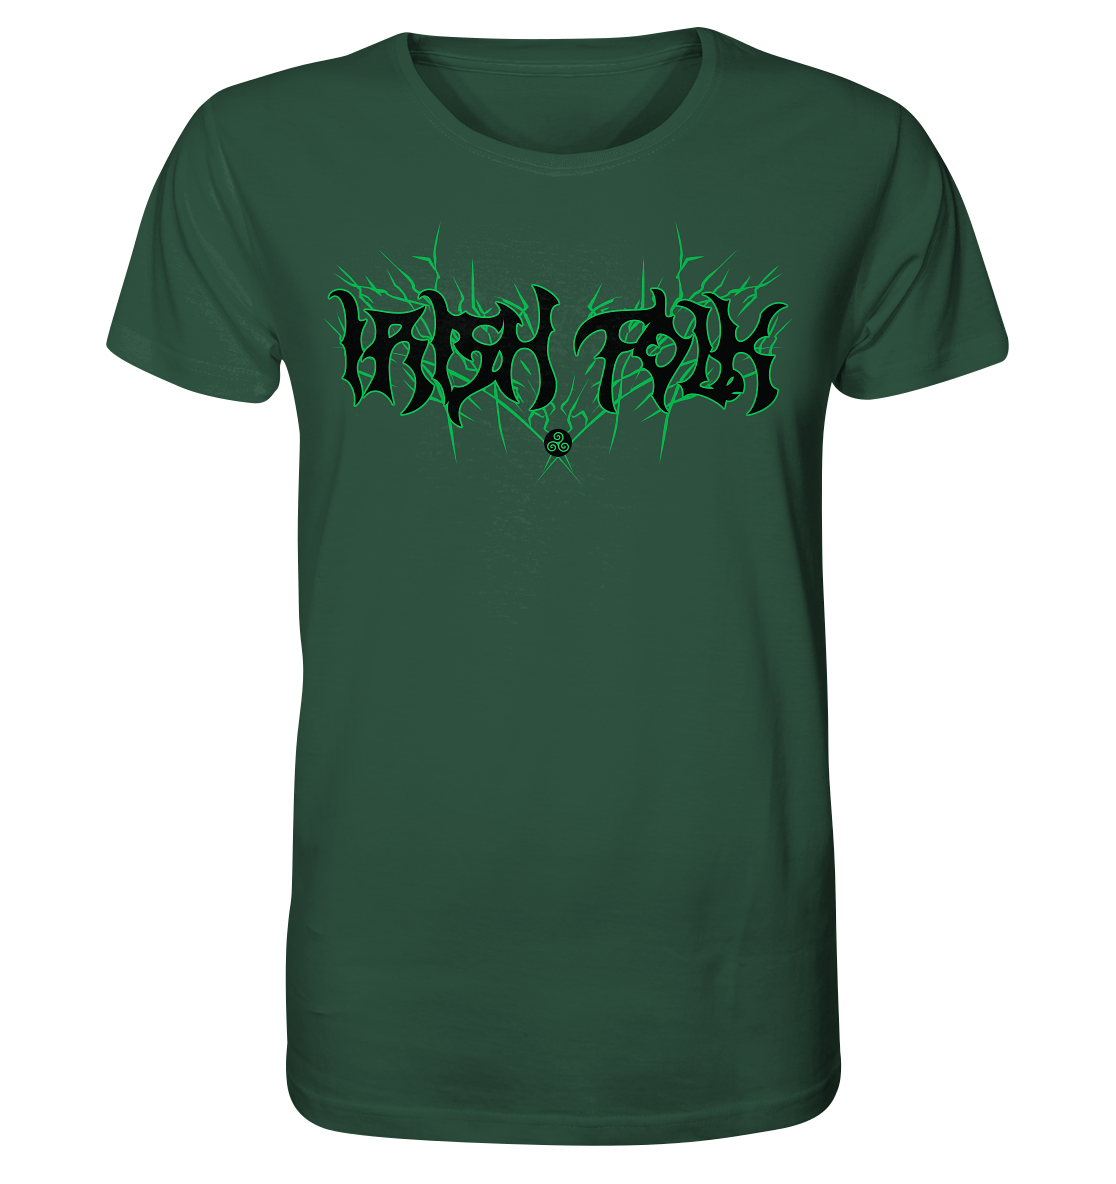 Irish Folk "Metal Band" - Organic Shirt